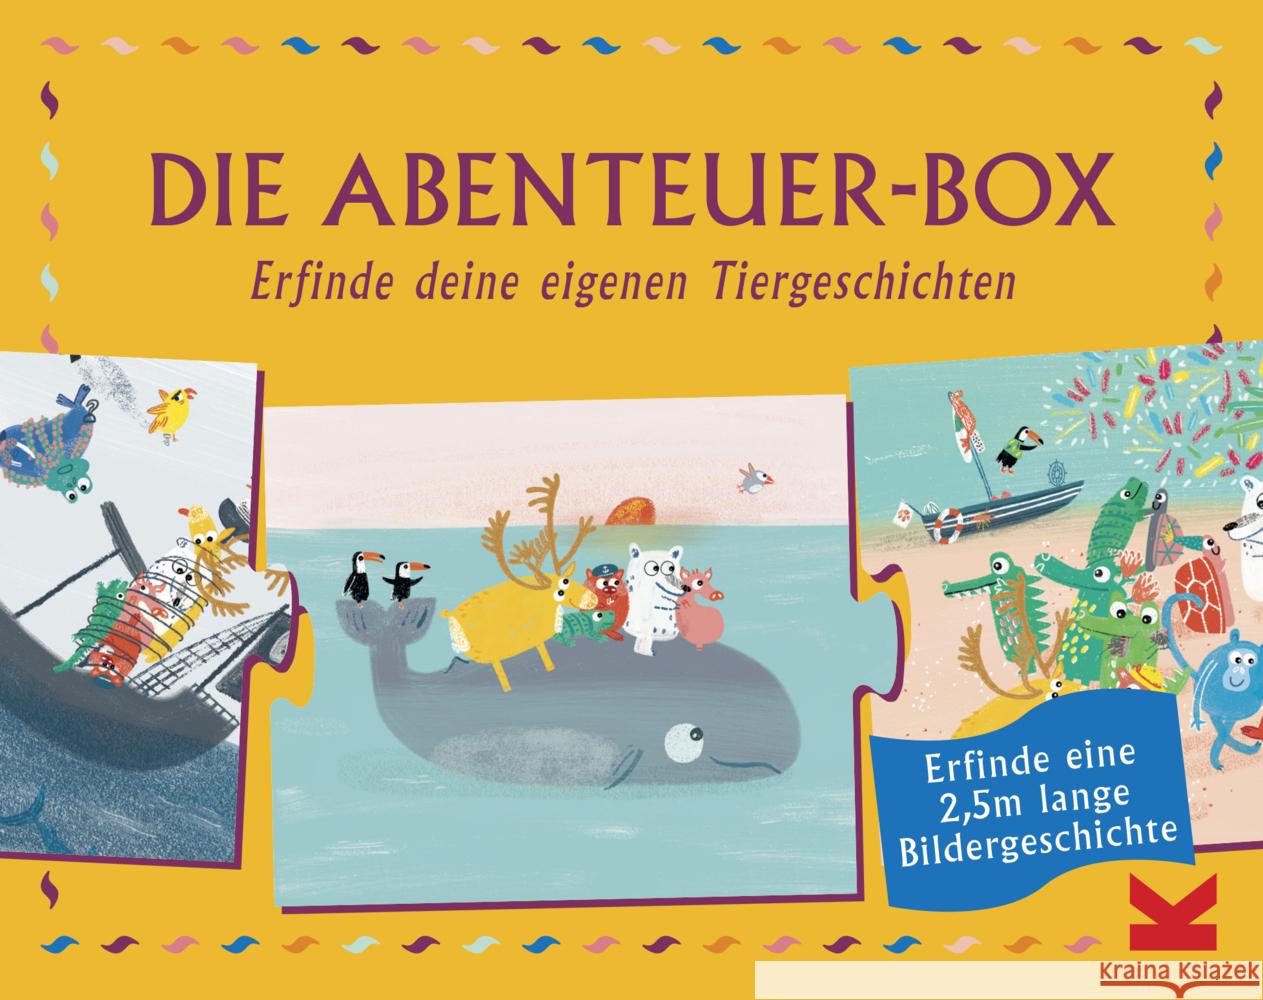 Die Abenteuer-Box (Kinderpuzzles) : Erfinde deine eigenen Tiergeschichten